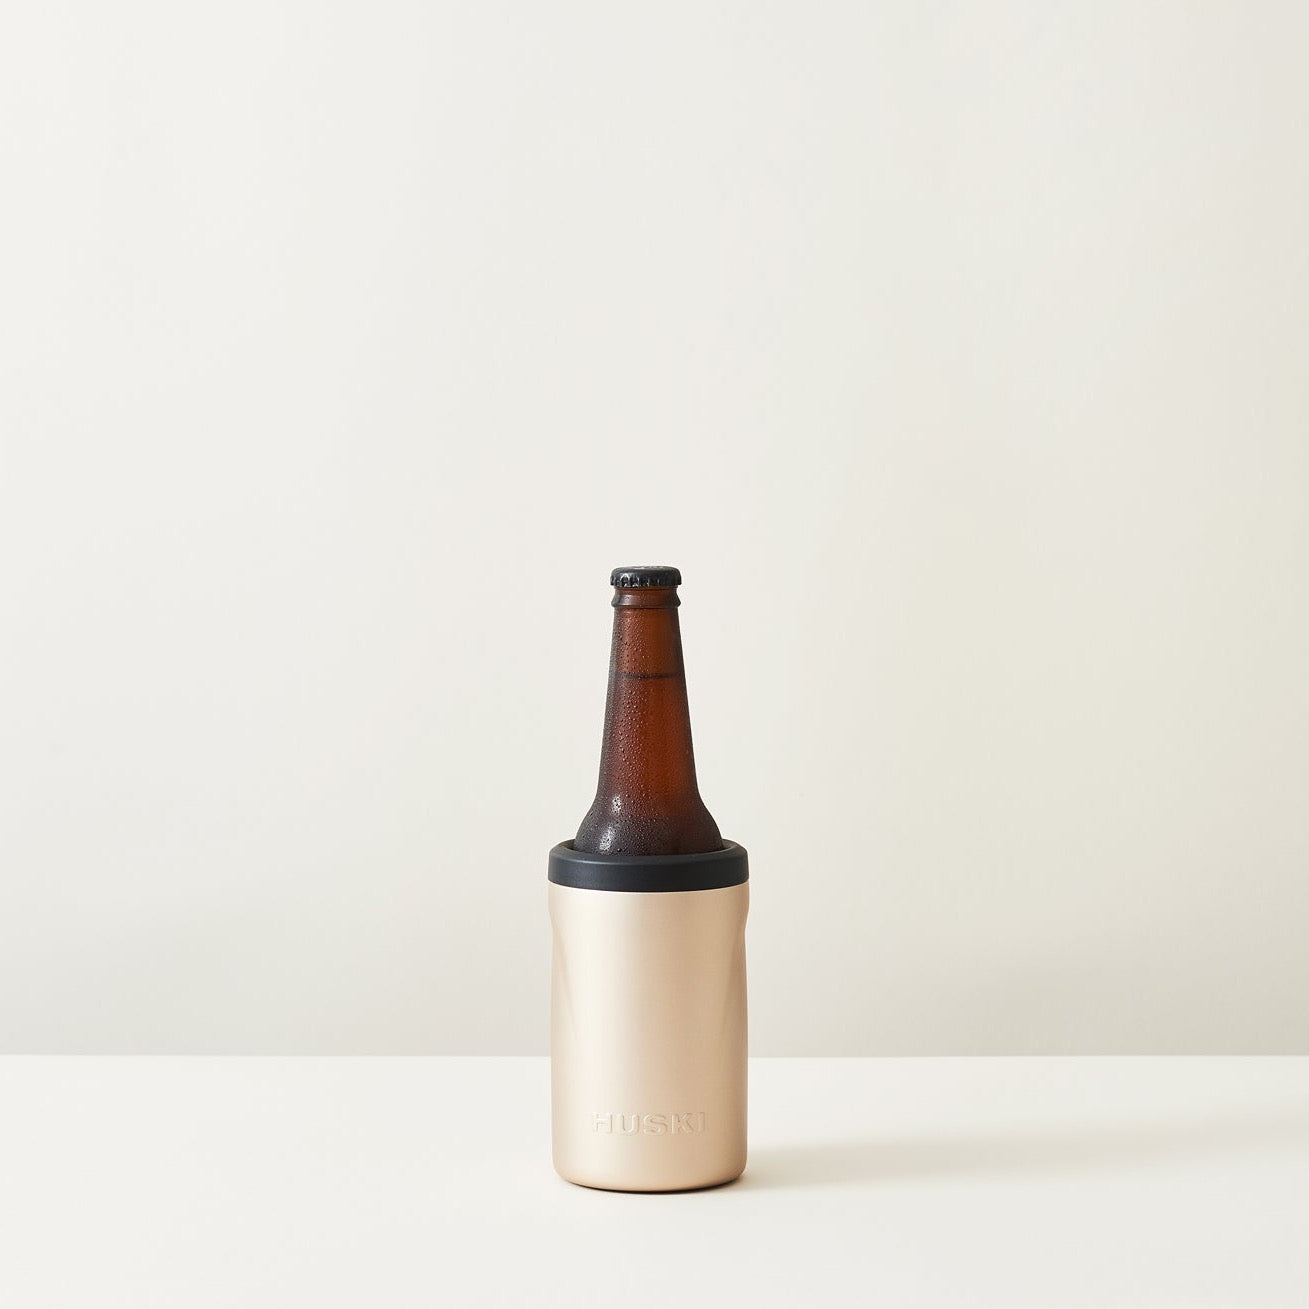 Huski Beer Cooler | Champagne